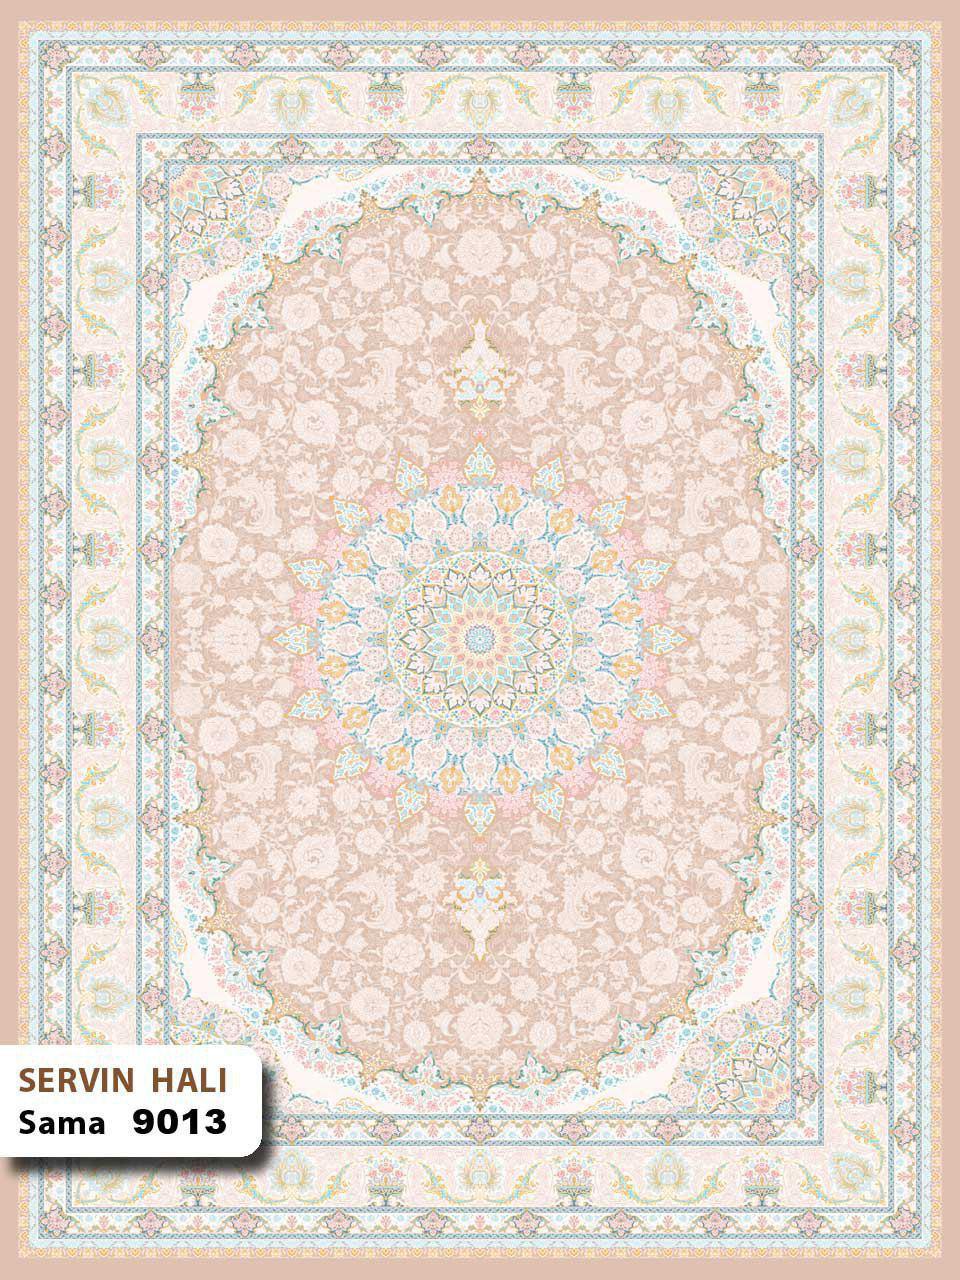 سما 9013/دنیای فرش/فرش ایرانی/فرش ماشینی/donyayfarsh